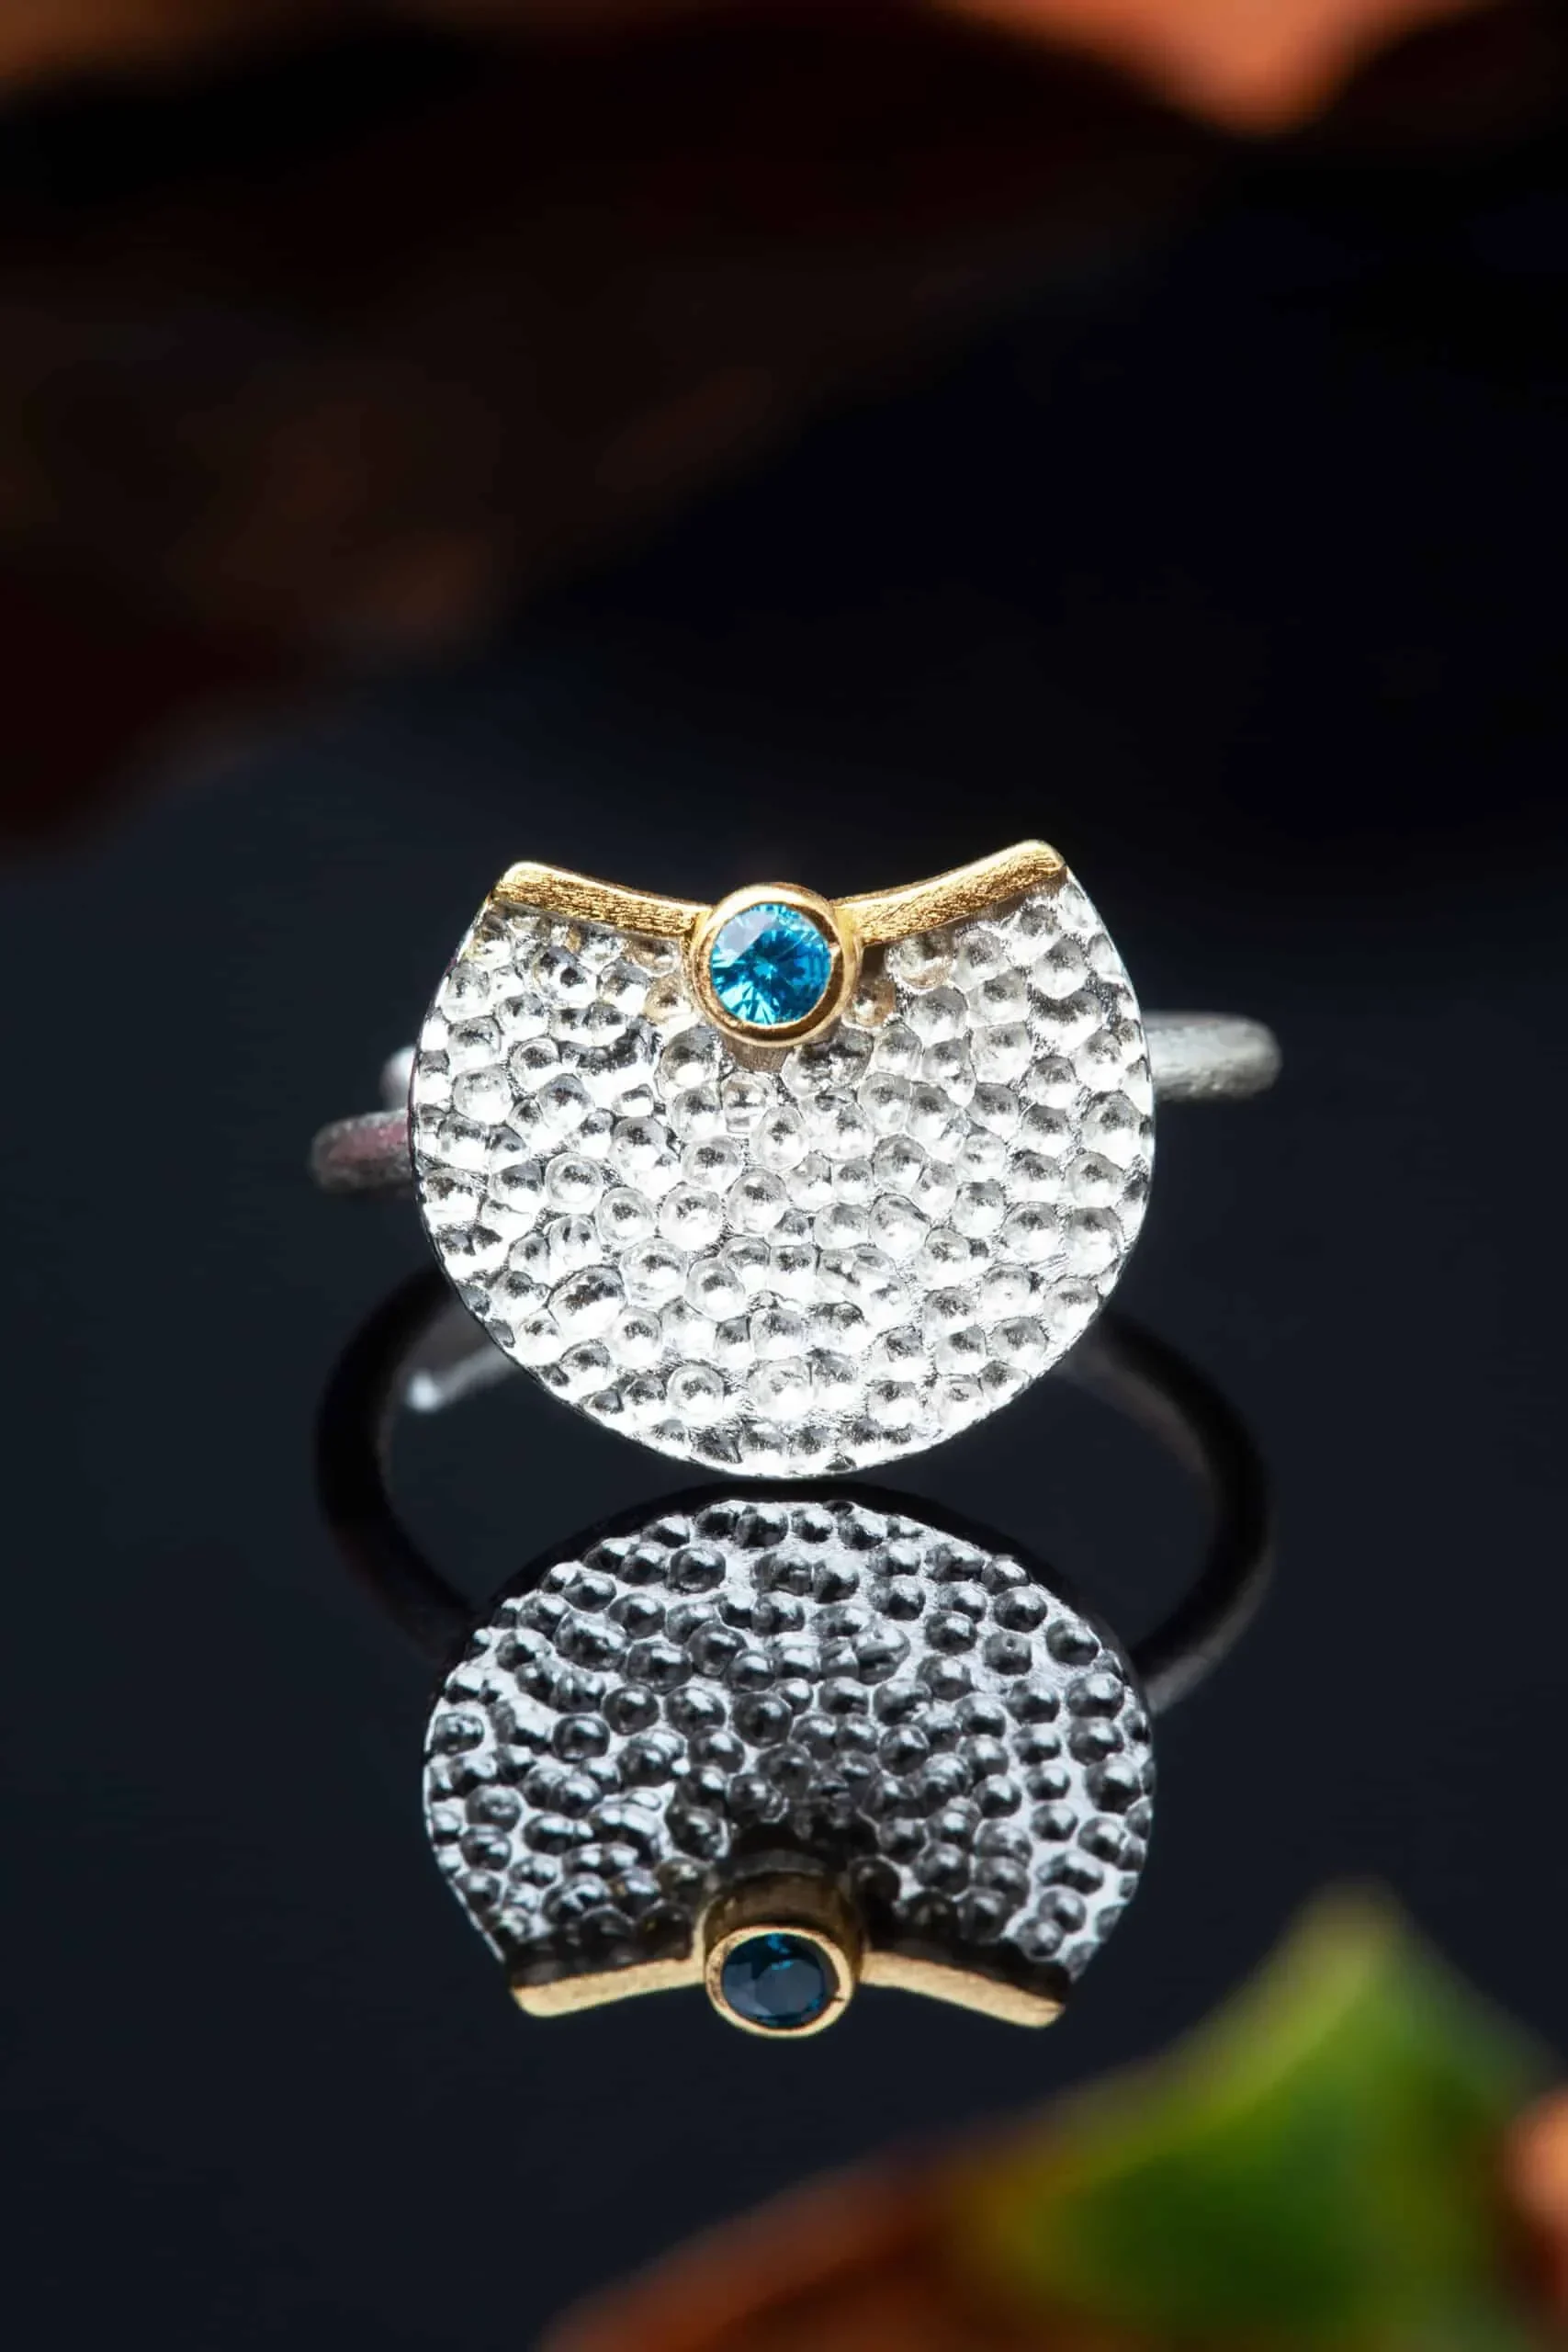 Χειροποίητα κοσμήματα | Κυκλικό ασημένιο δαχτυλίδι με επιπλατίνωση και επίχρυσες λεπτομέρειες, συδιασμένο με ζιργκόν gallery 2